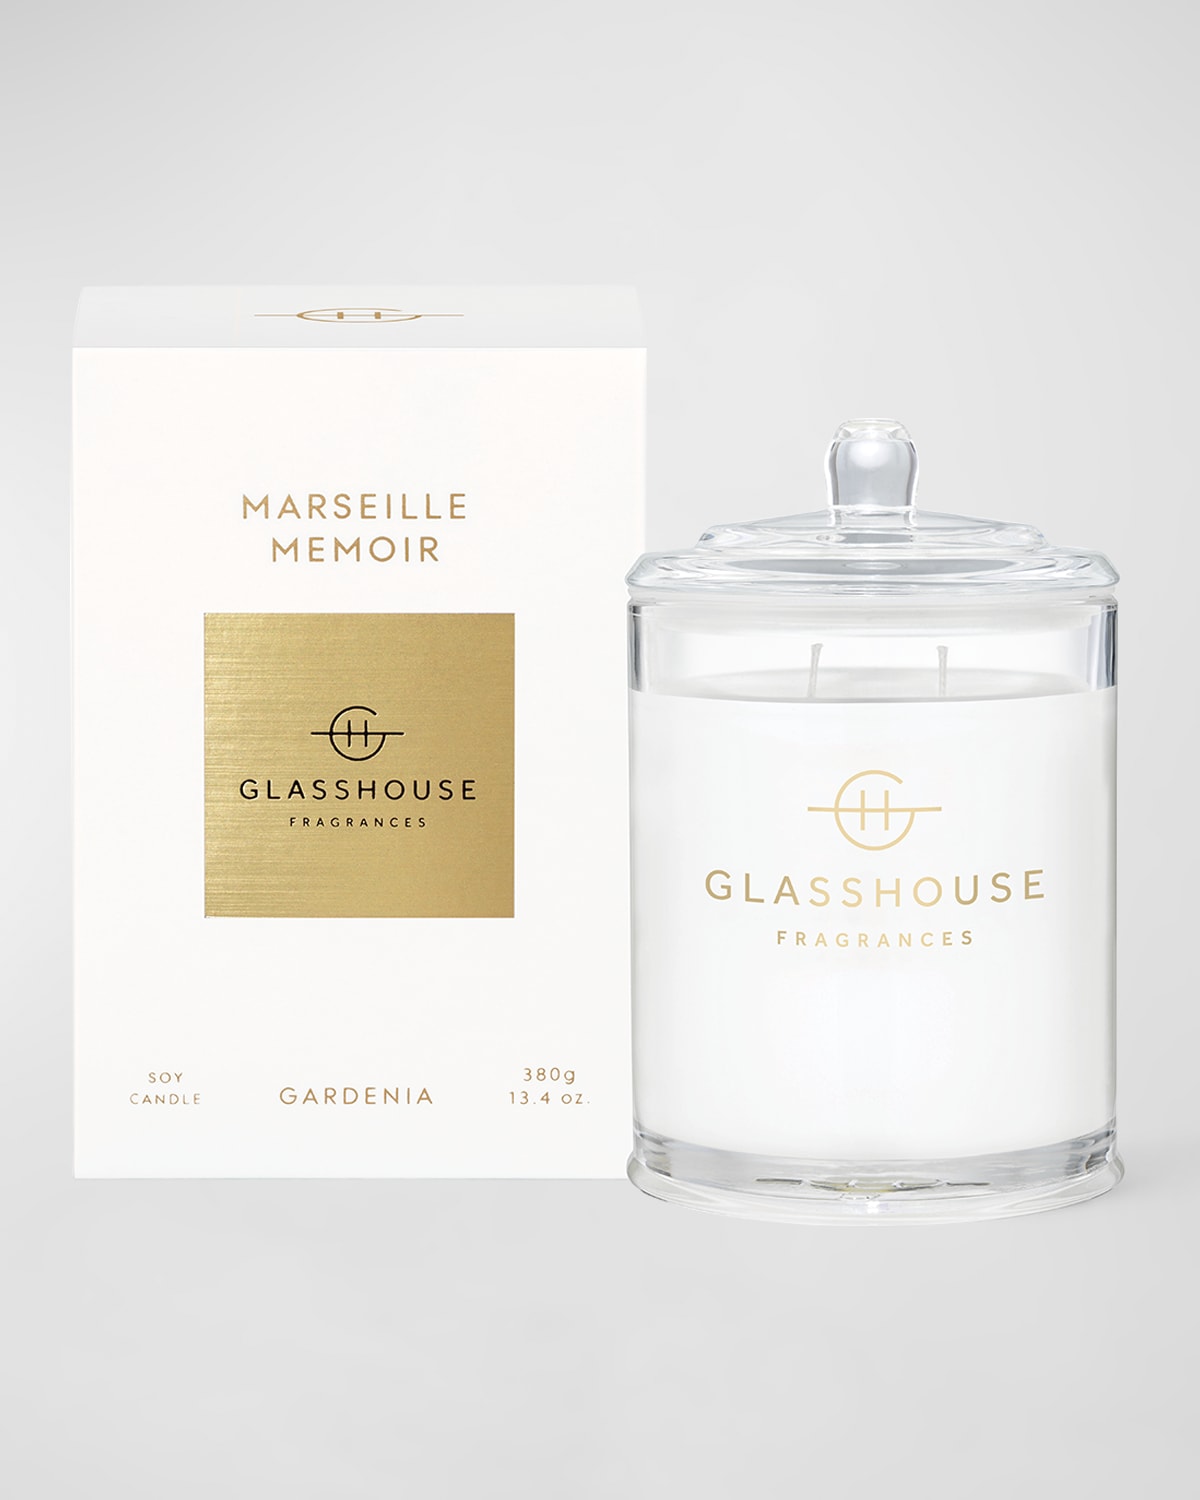 Glasshouse Fragrances Marseille Memoir Candle, 13.4 Oz. In White